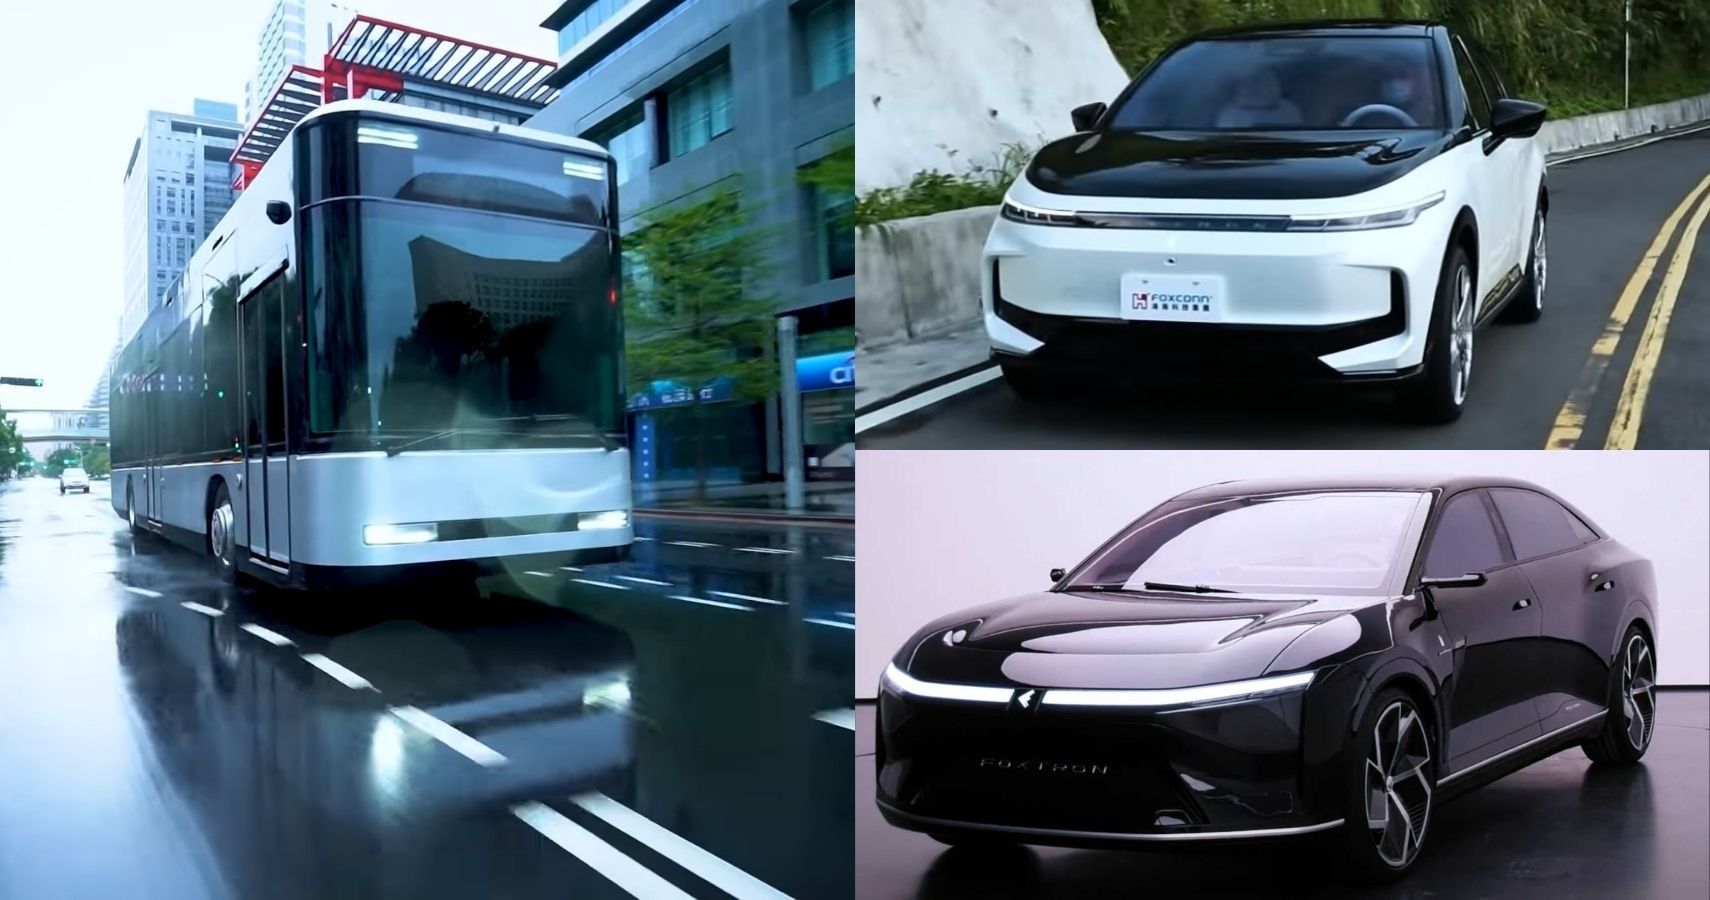 Foxtron EVs include an SUV, a sedan, and a bus